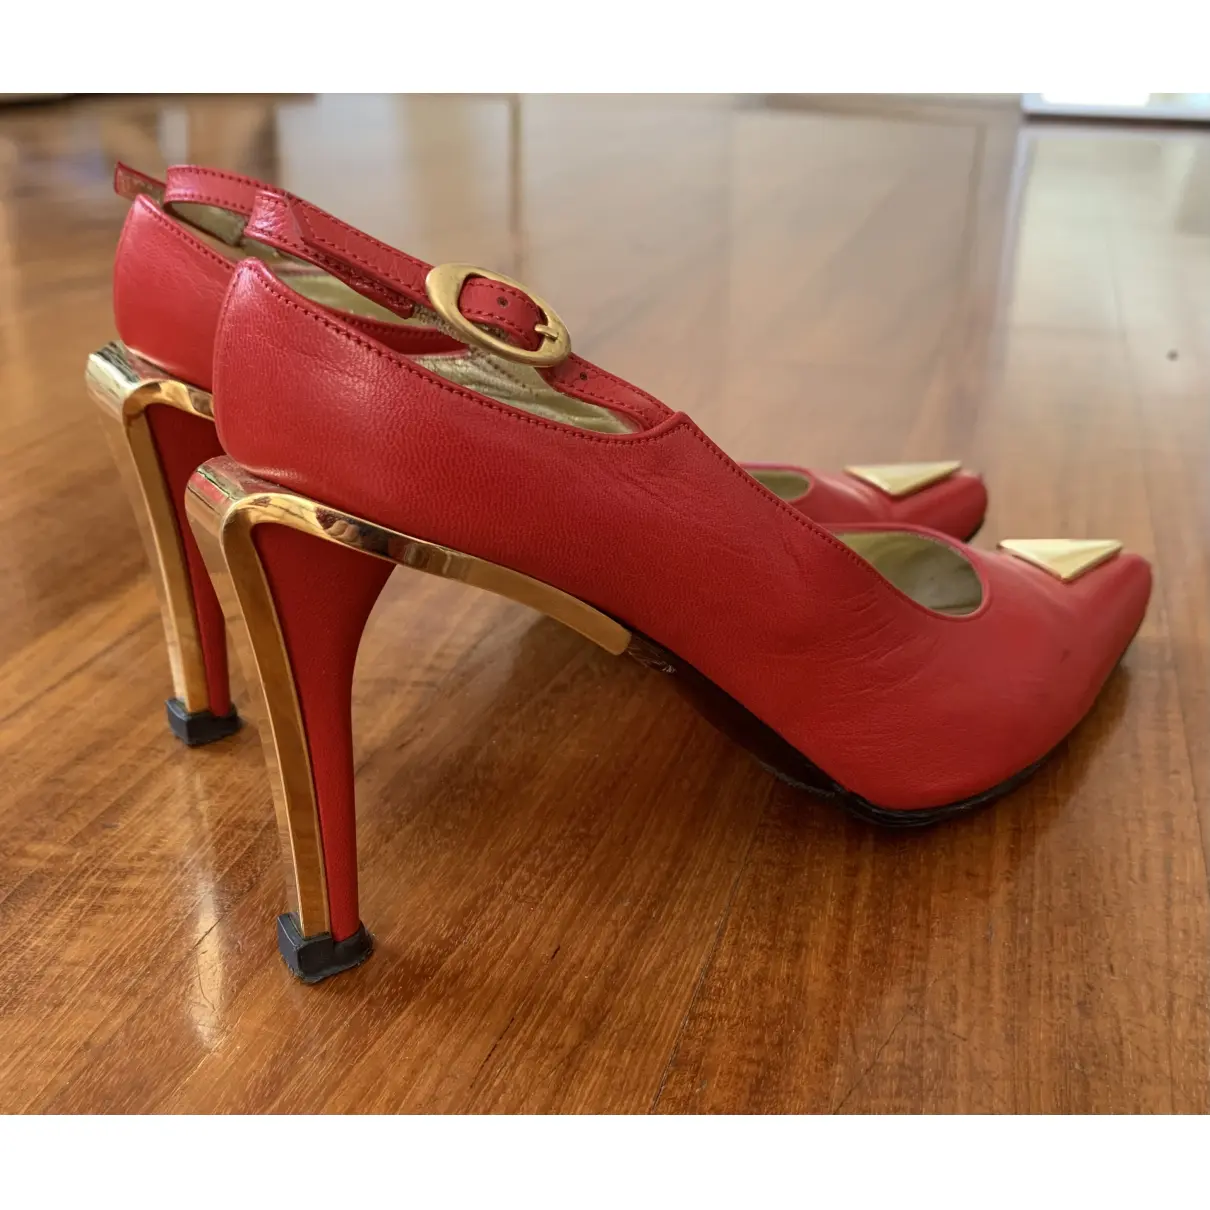 Leather heels Charles Jourdan - Vintage